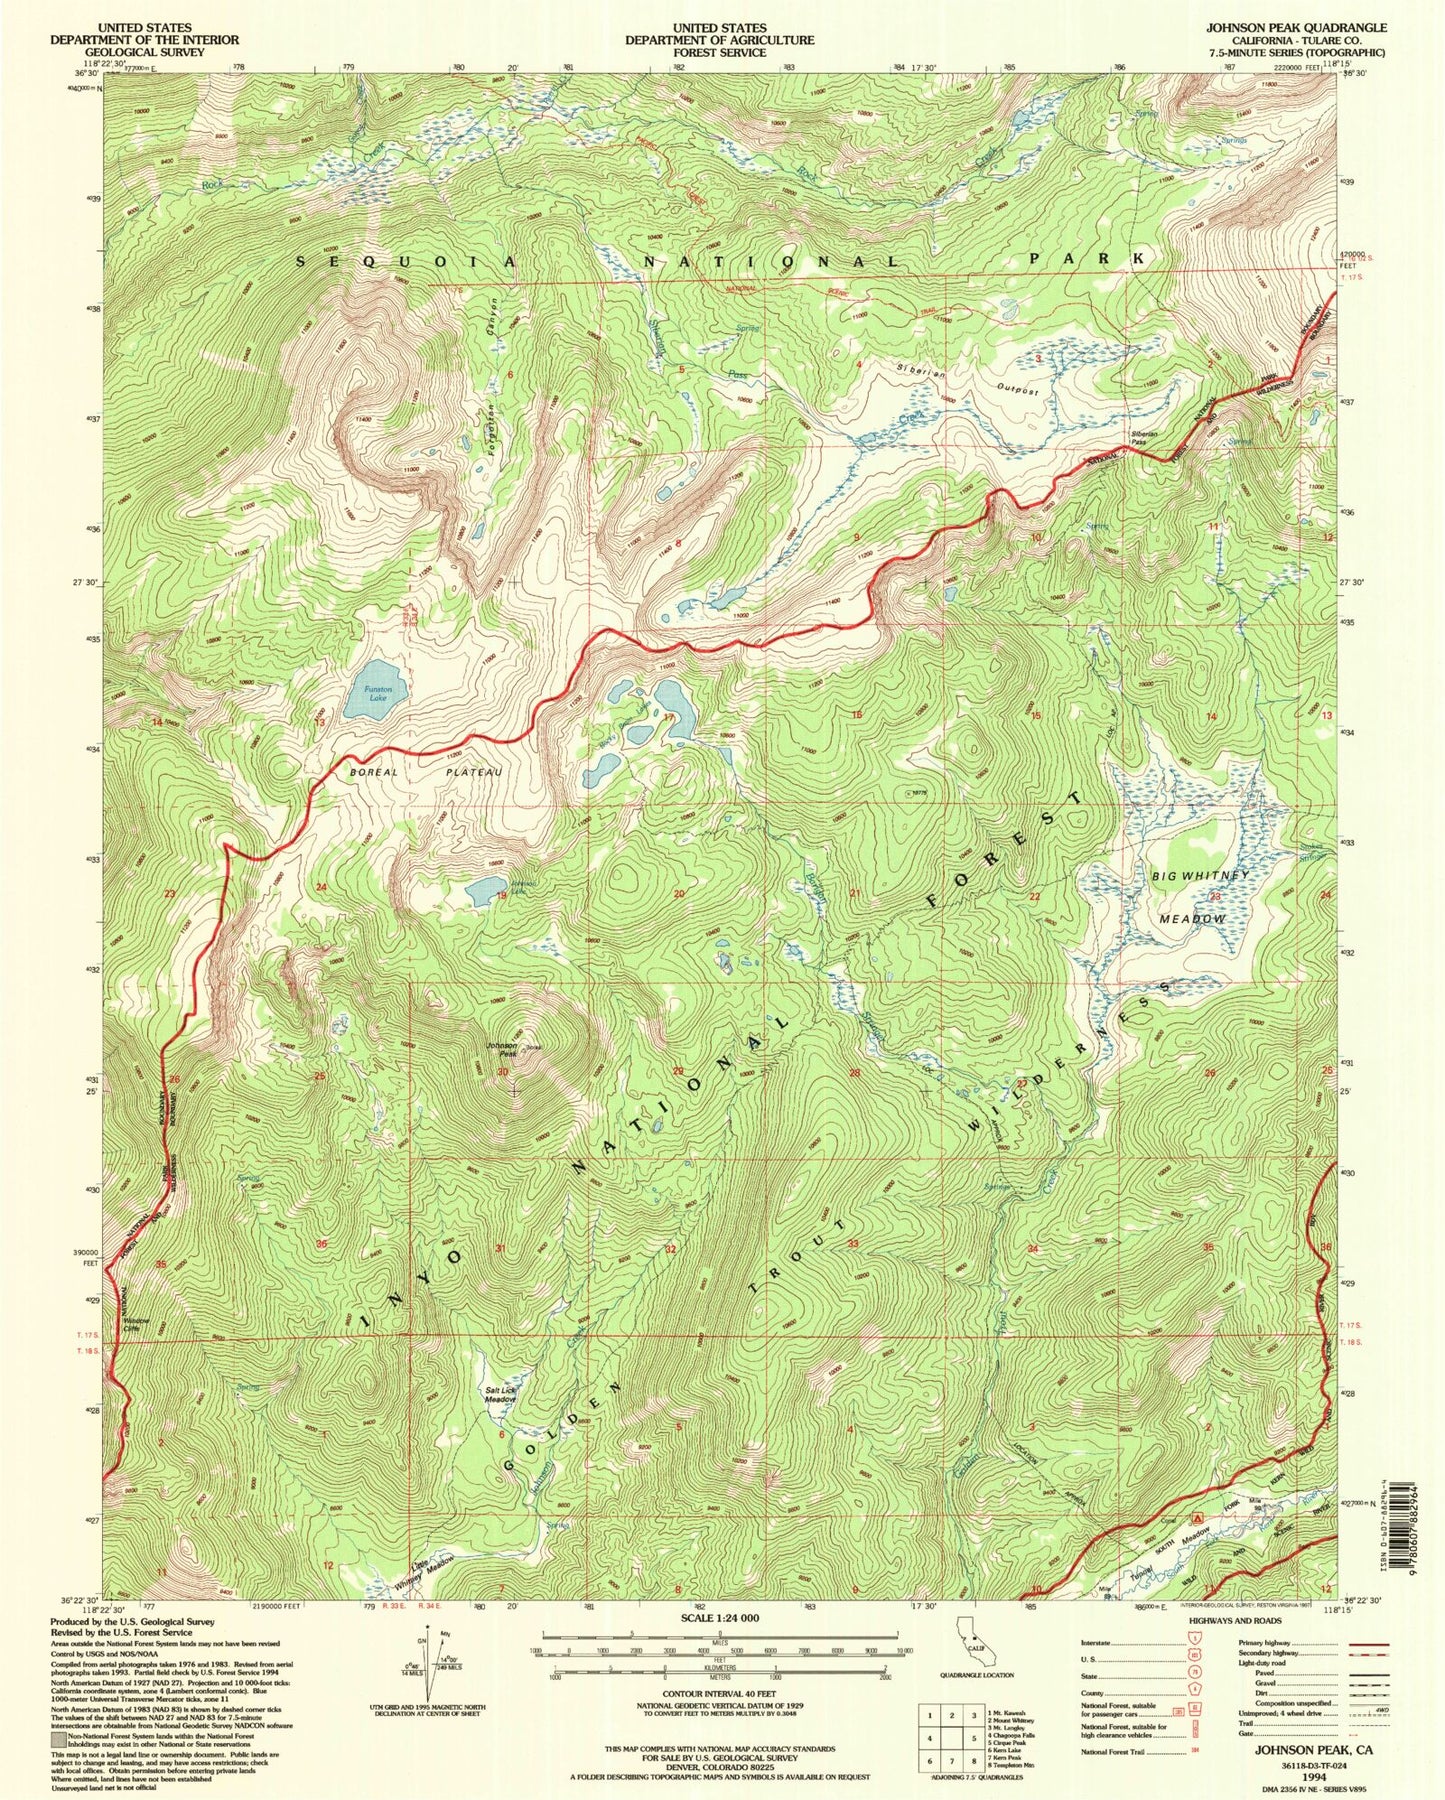 USGS Classic Johnson Peak California 7.5'x7.5' Topo Map Image